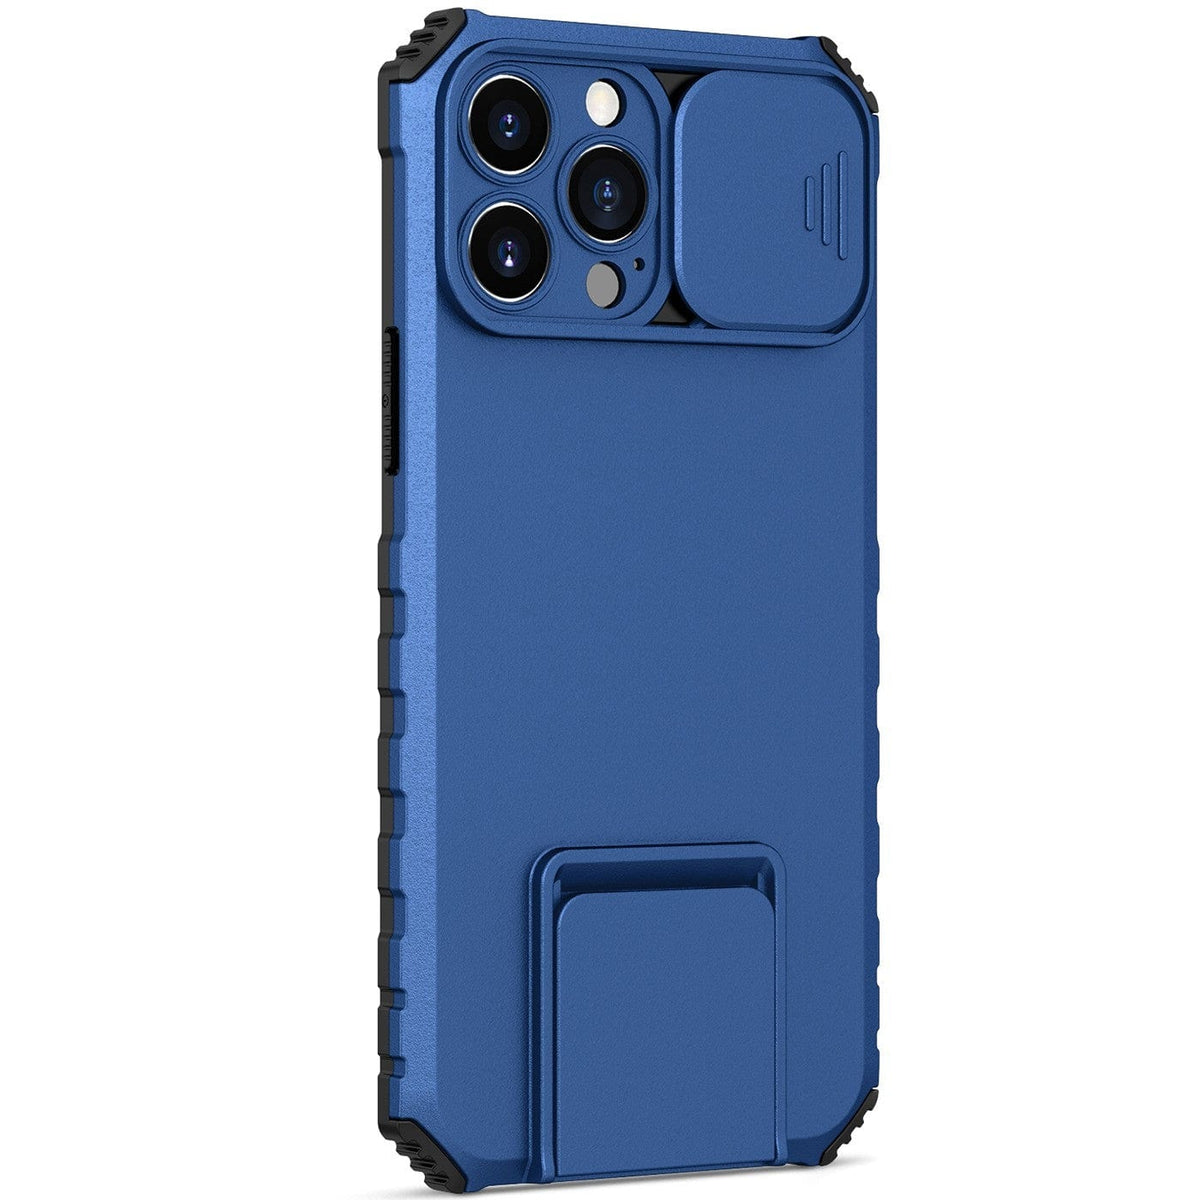 Husa Defender cu Stand pentru iPhone 12 Pro Max, Albastru, Suport reglabil, Antisoc, Protectie glisanta pentru camera